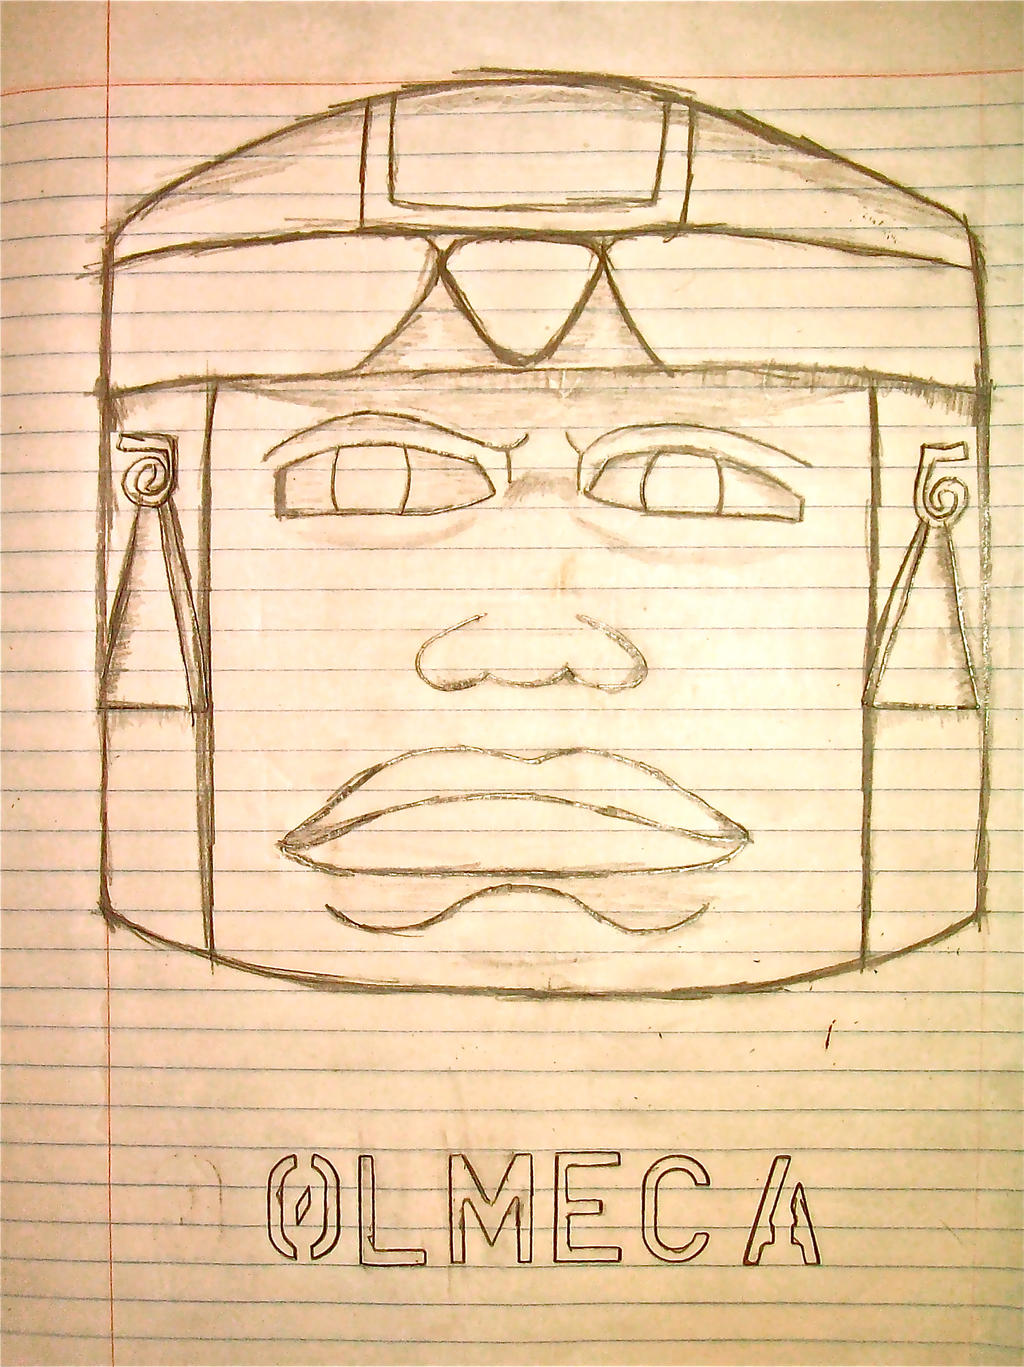 Dibujo de cabeza Olmeca. by Sonicdooplissfan on DeviantArt